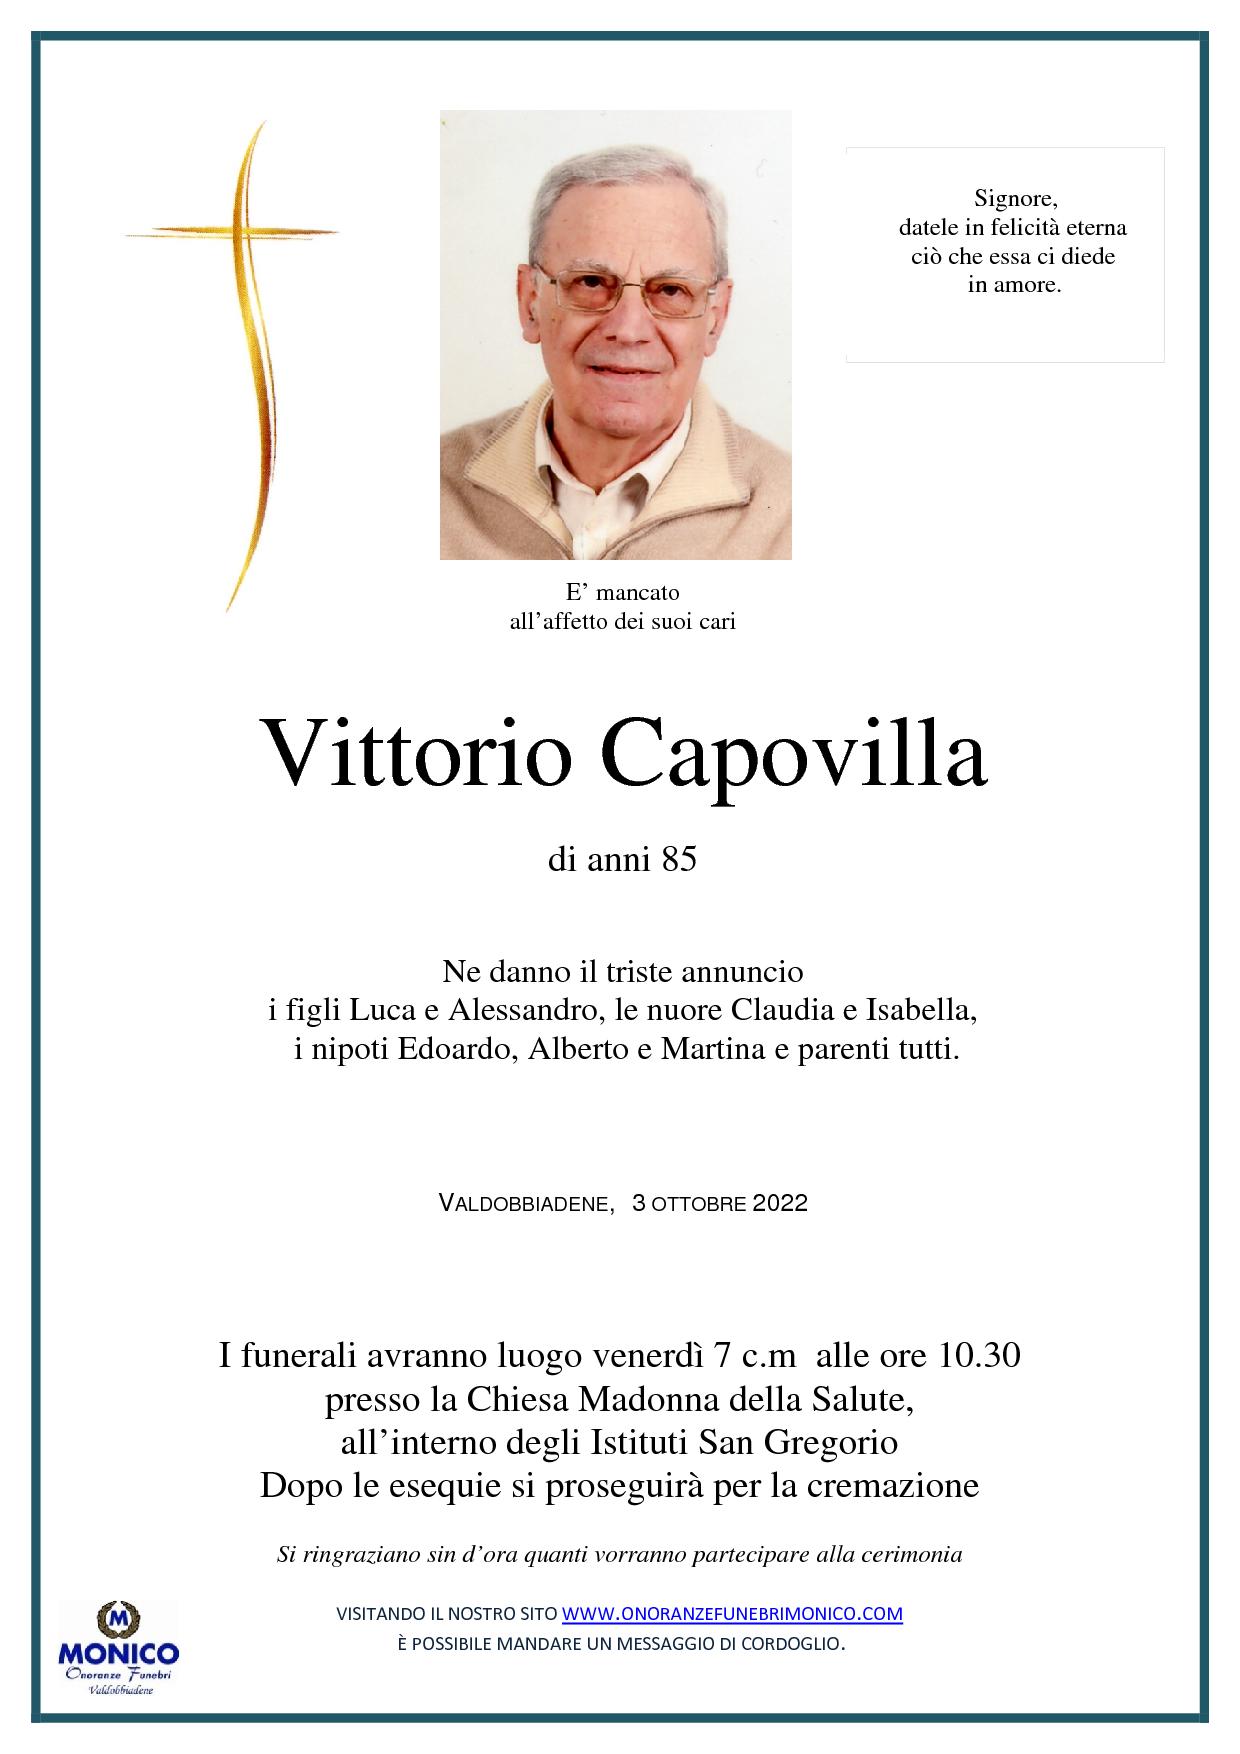 Capovilla Vittorio